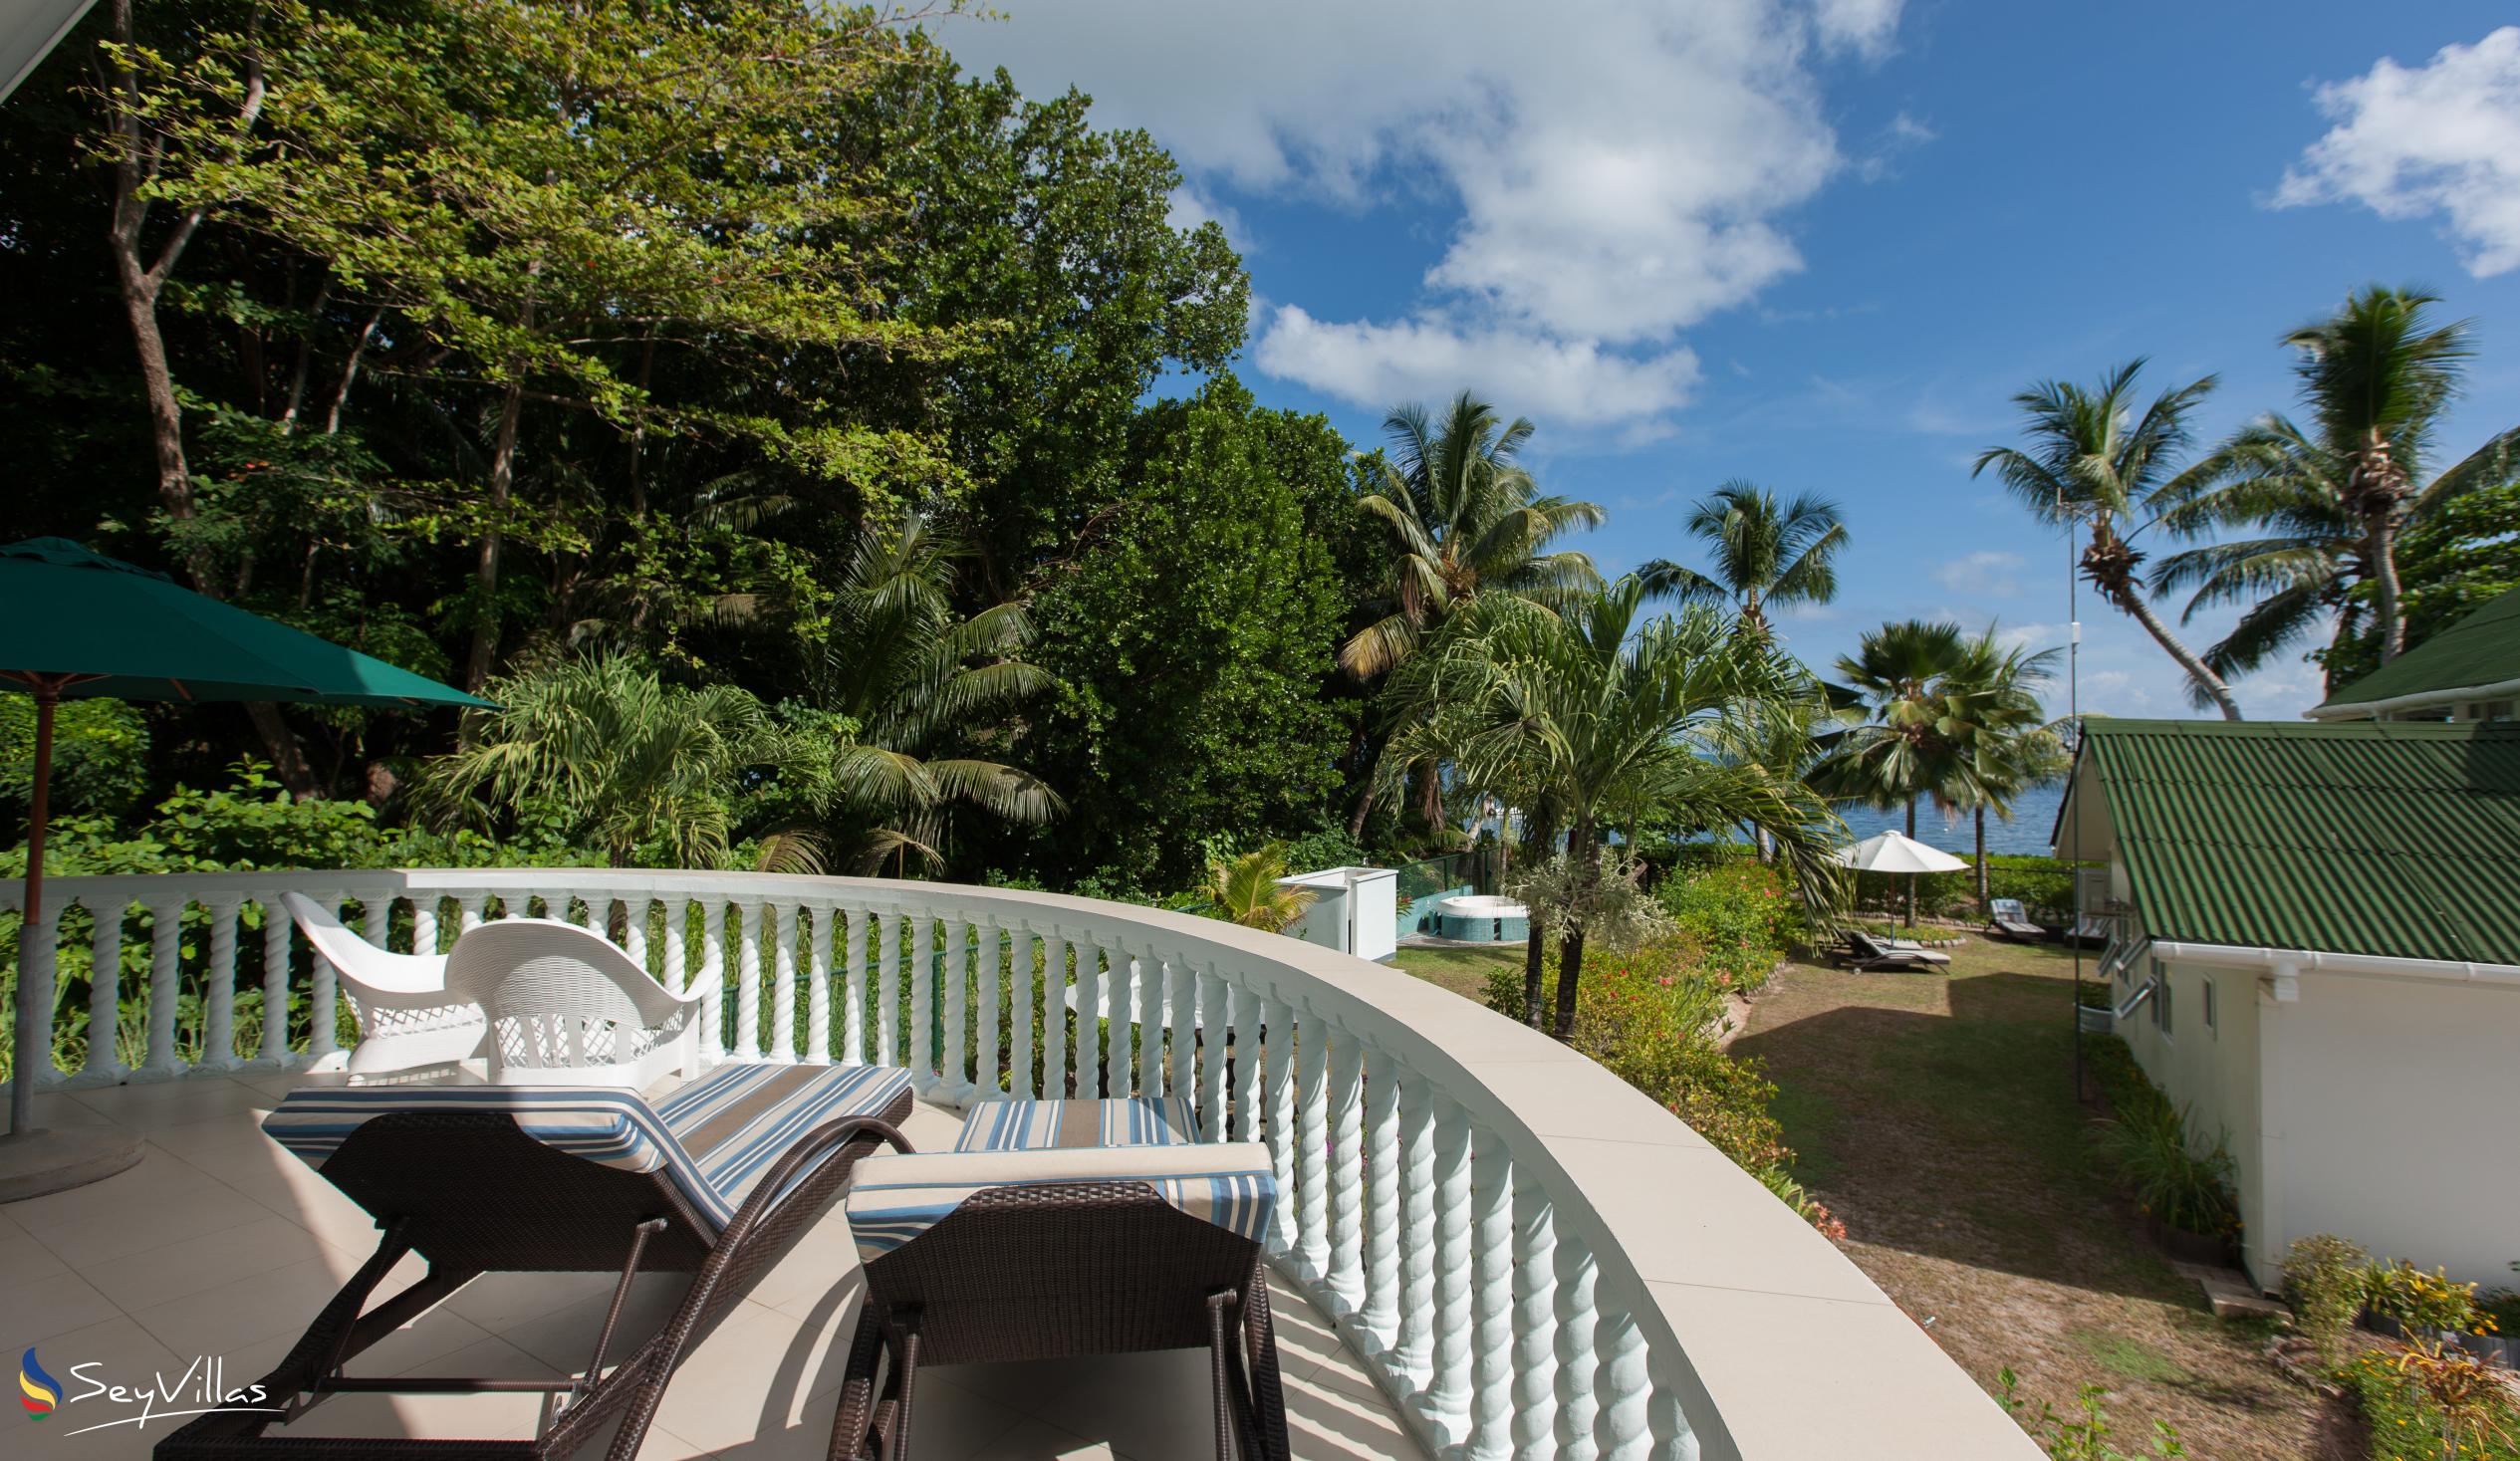 Foto 8: Ocean Villa - Aussenbereich - Praslin (Seychellen)